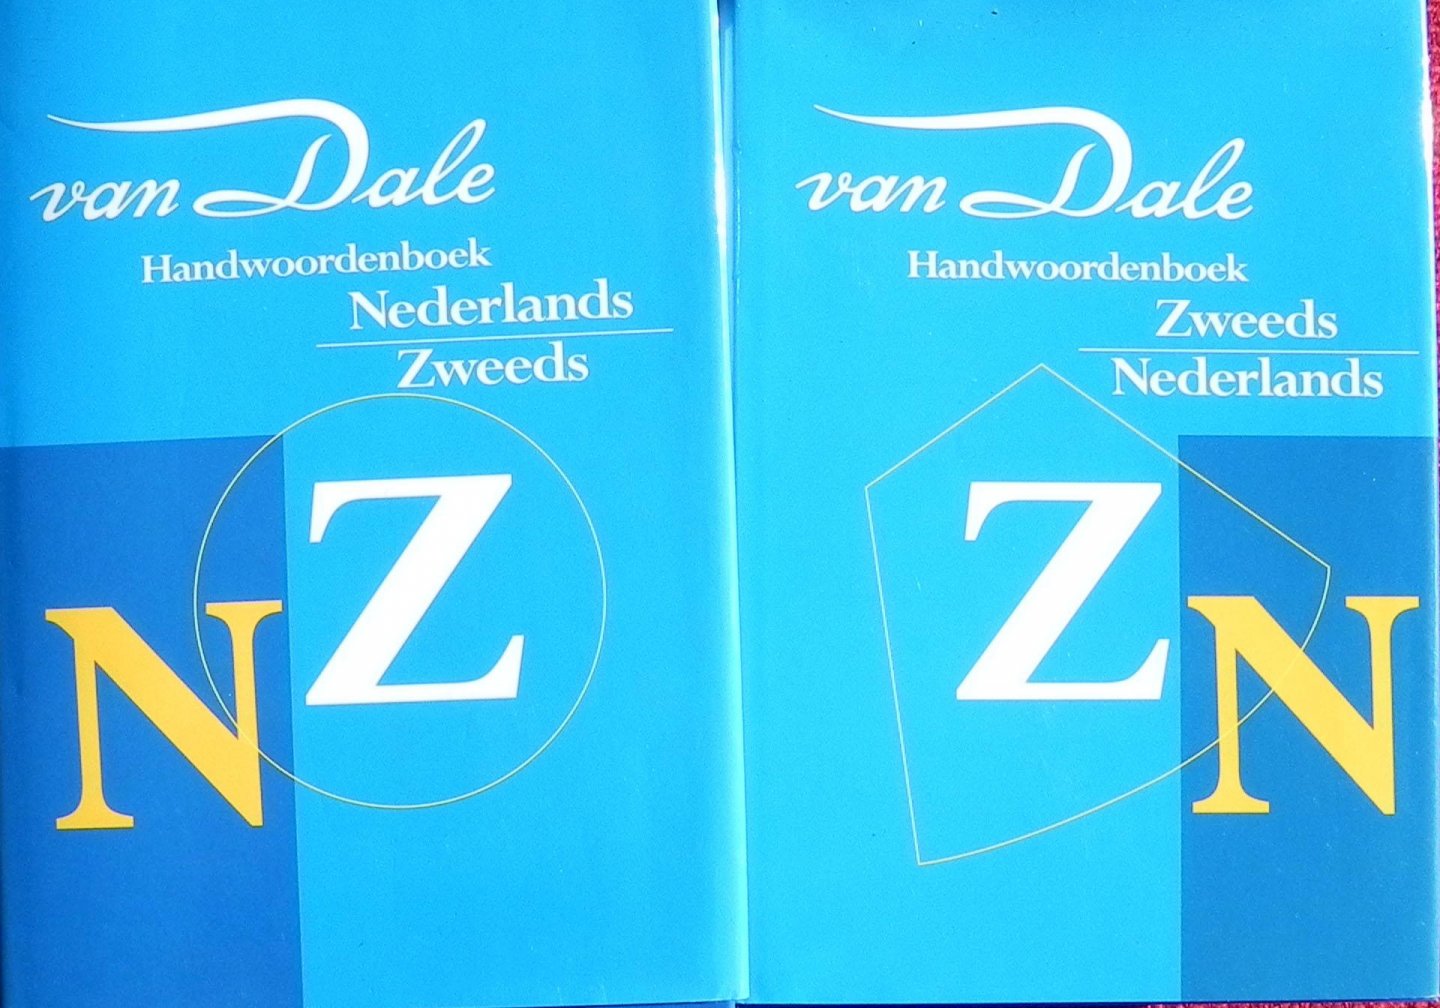 Van Dale - Van Dale. 2 handwoordenboeken Nederlands-Zweeds /Zweeds-Nederlands.